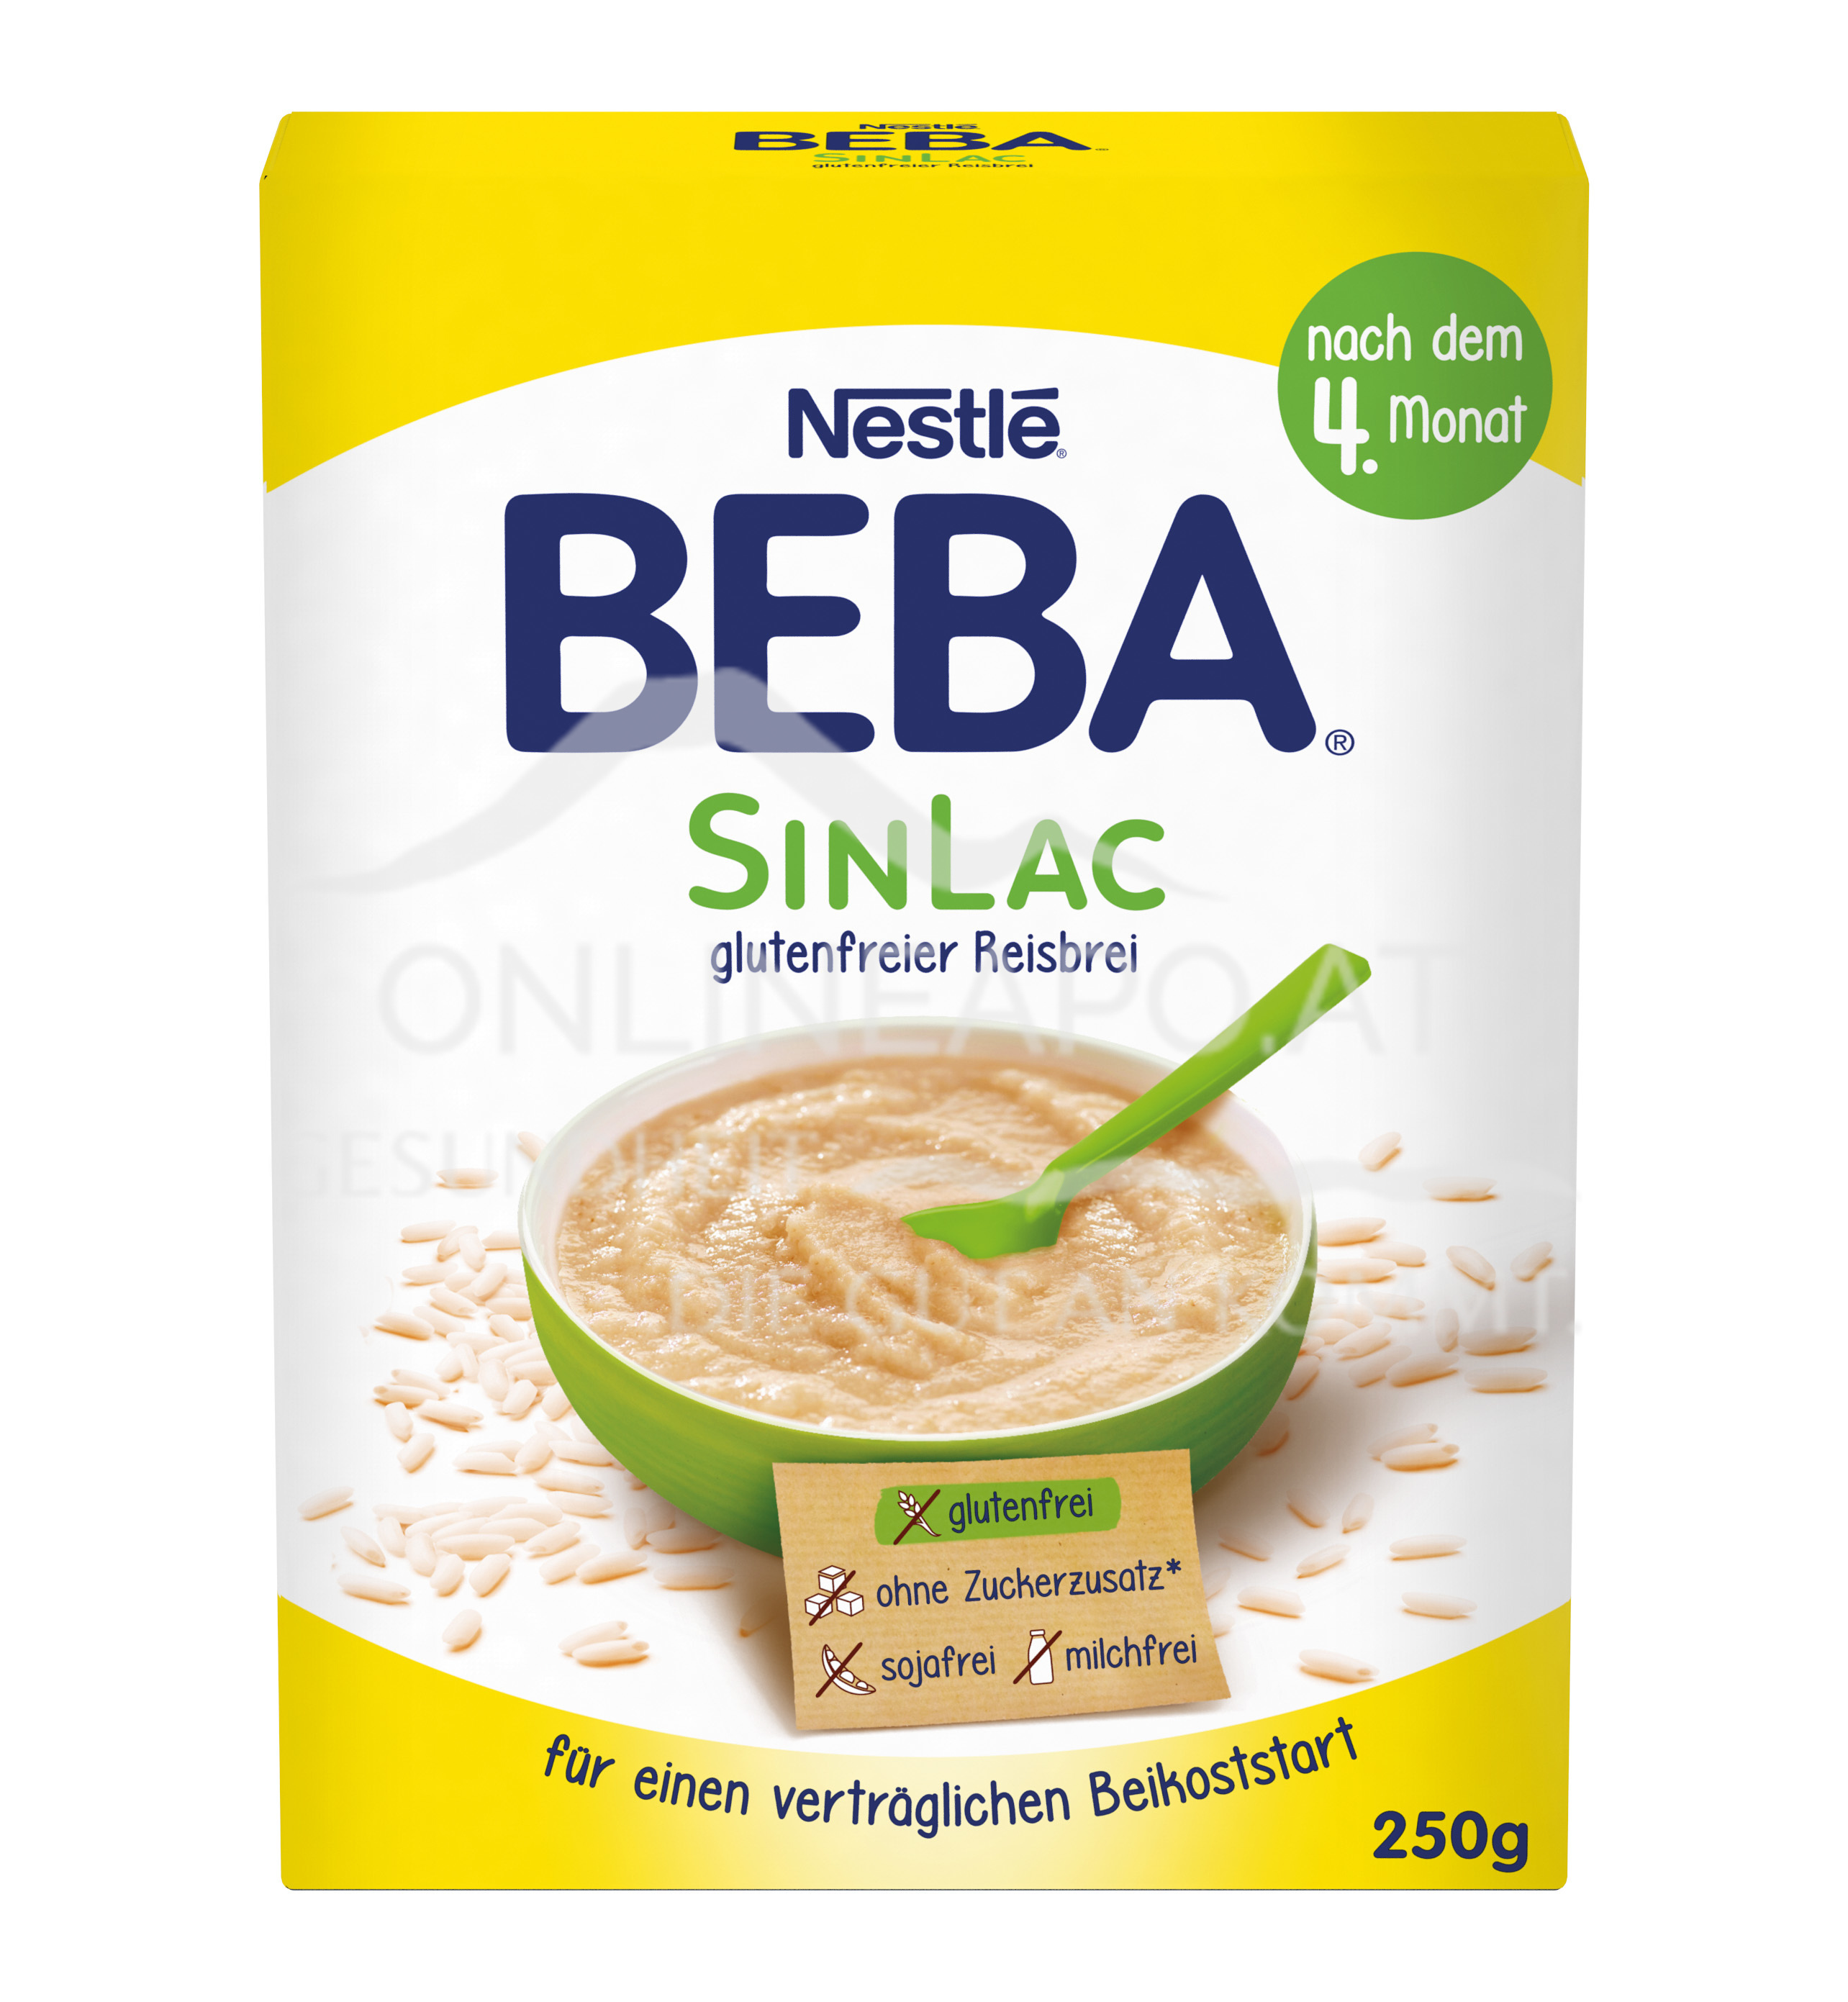 Nestlé BEBA SINLAC glutenfreier Reisbrei